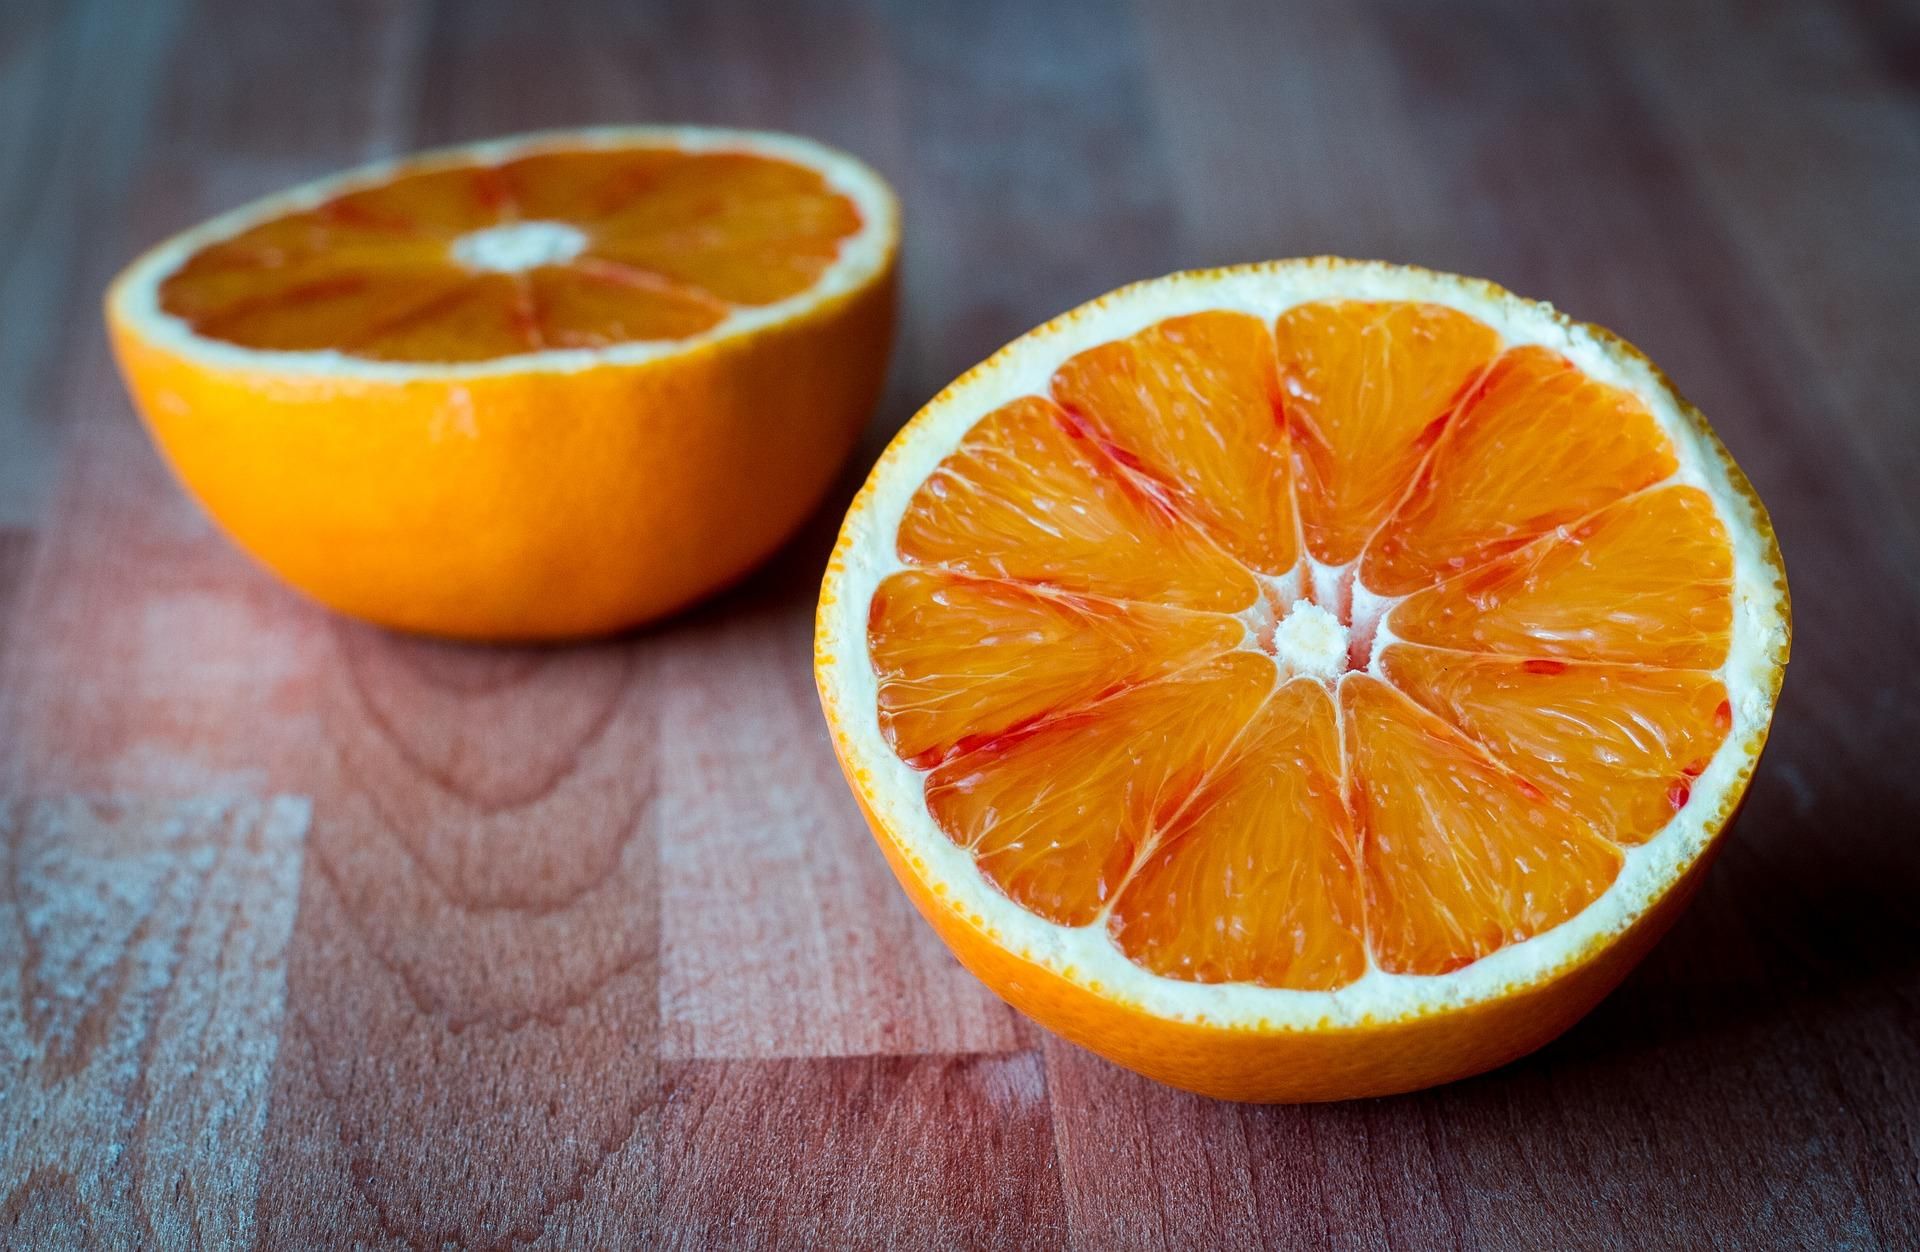 Легкий десерт для жаркого лета: как приготовить желе из апельсинового сока с ягодами